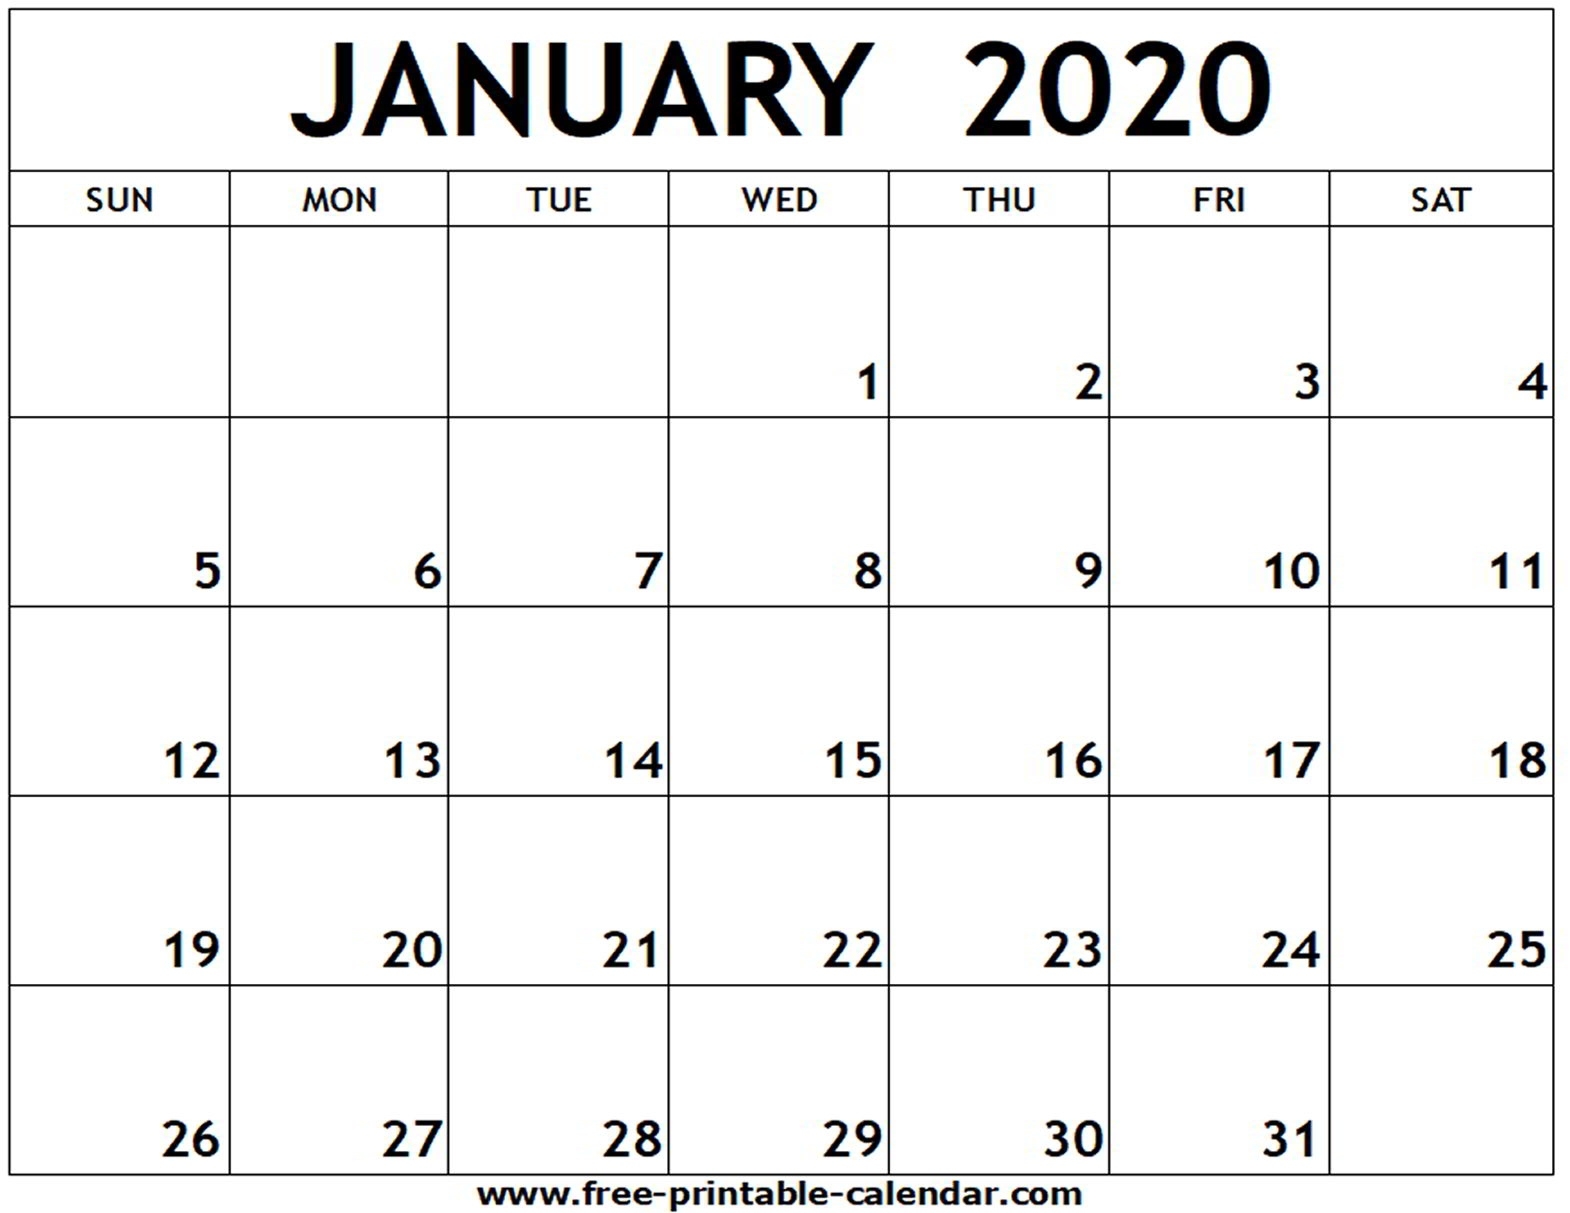 January 2020 Printable Calendar - Free-Printable-Calendar January 2020 Calendar Printable Canada